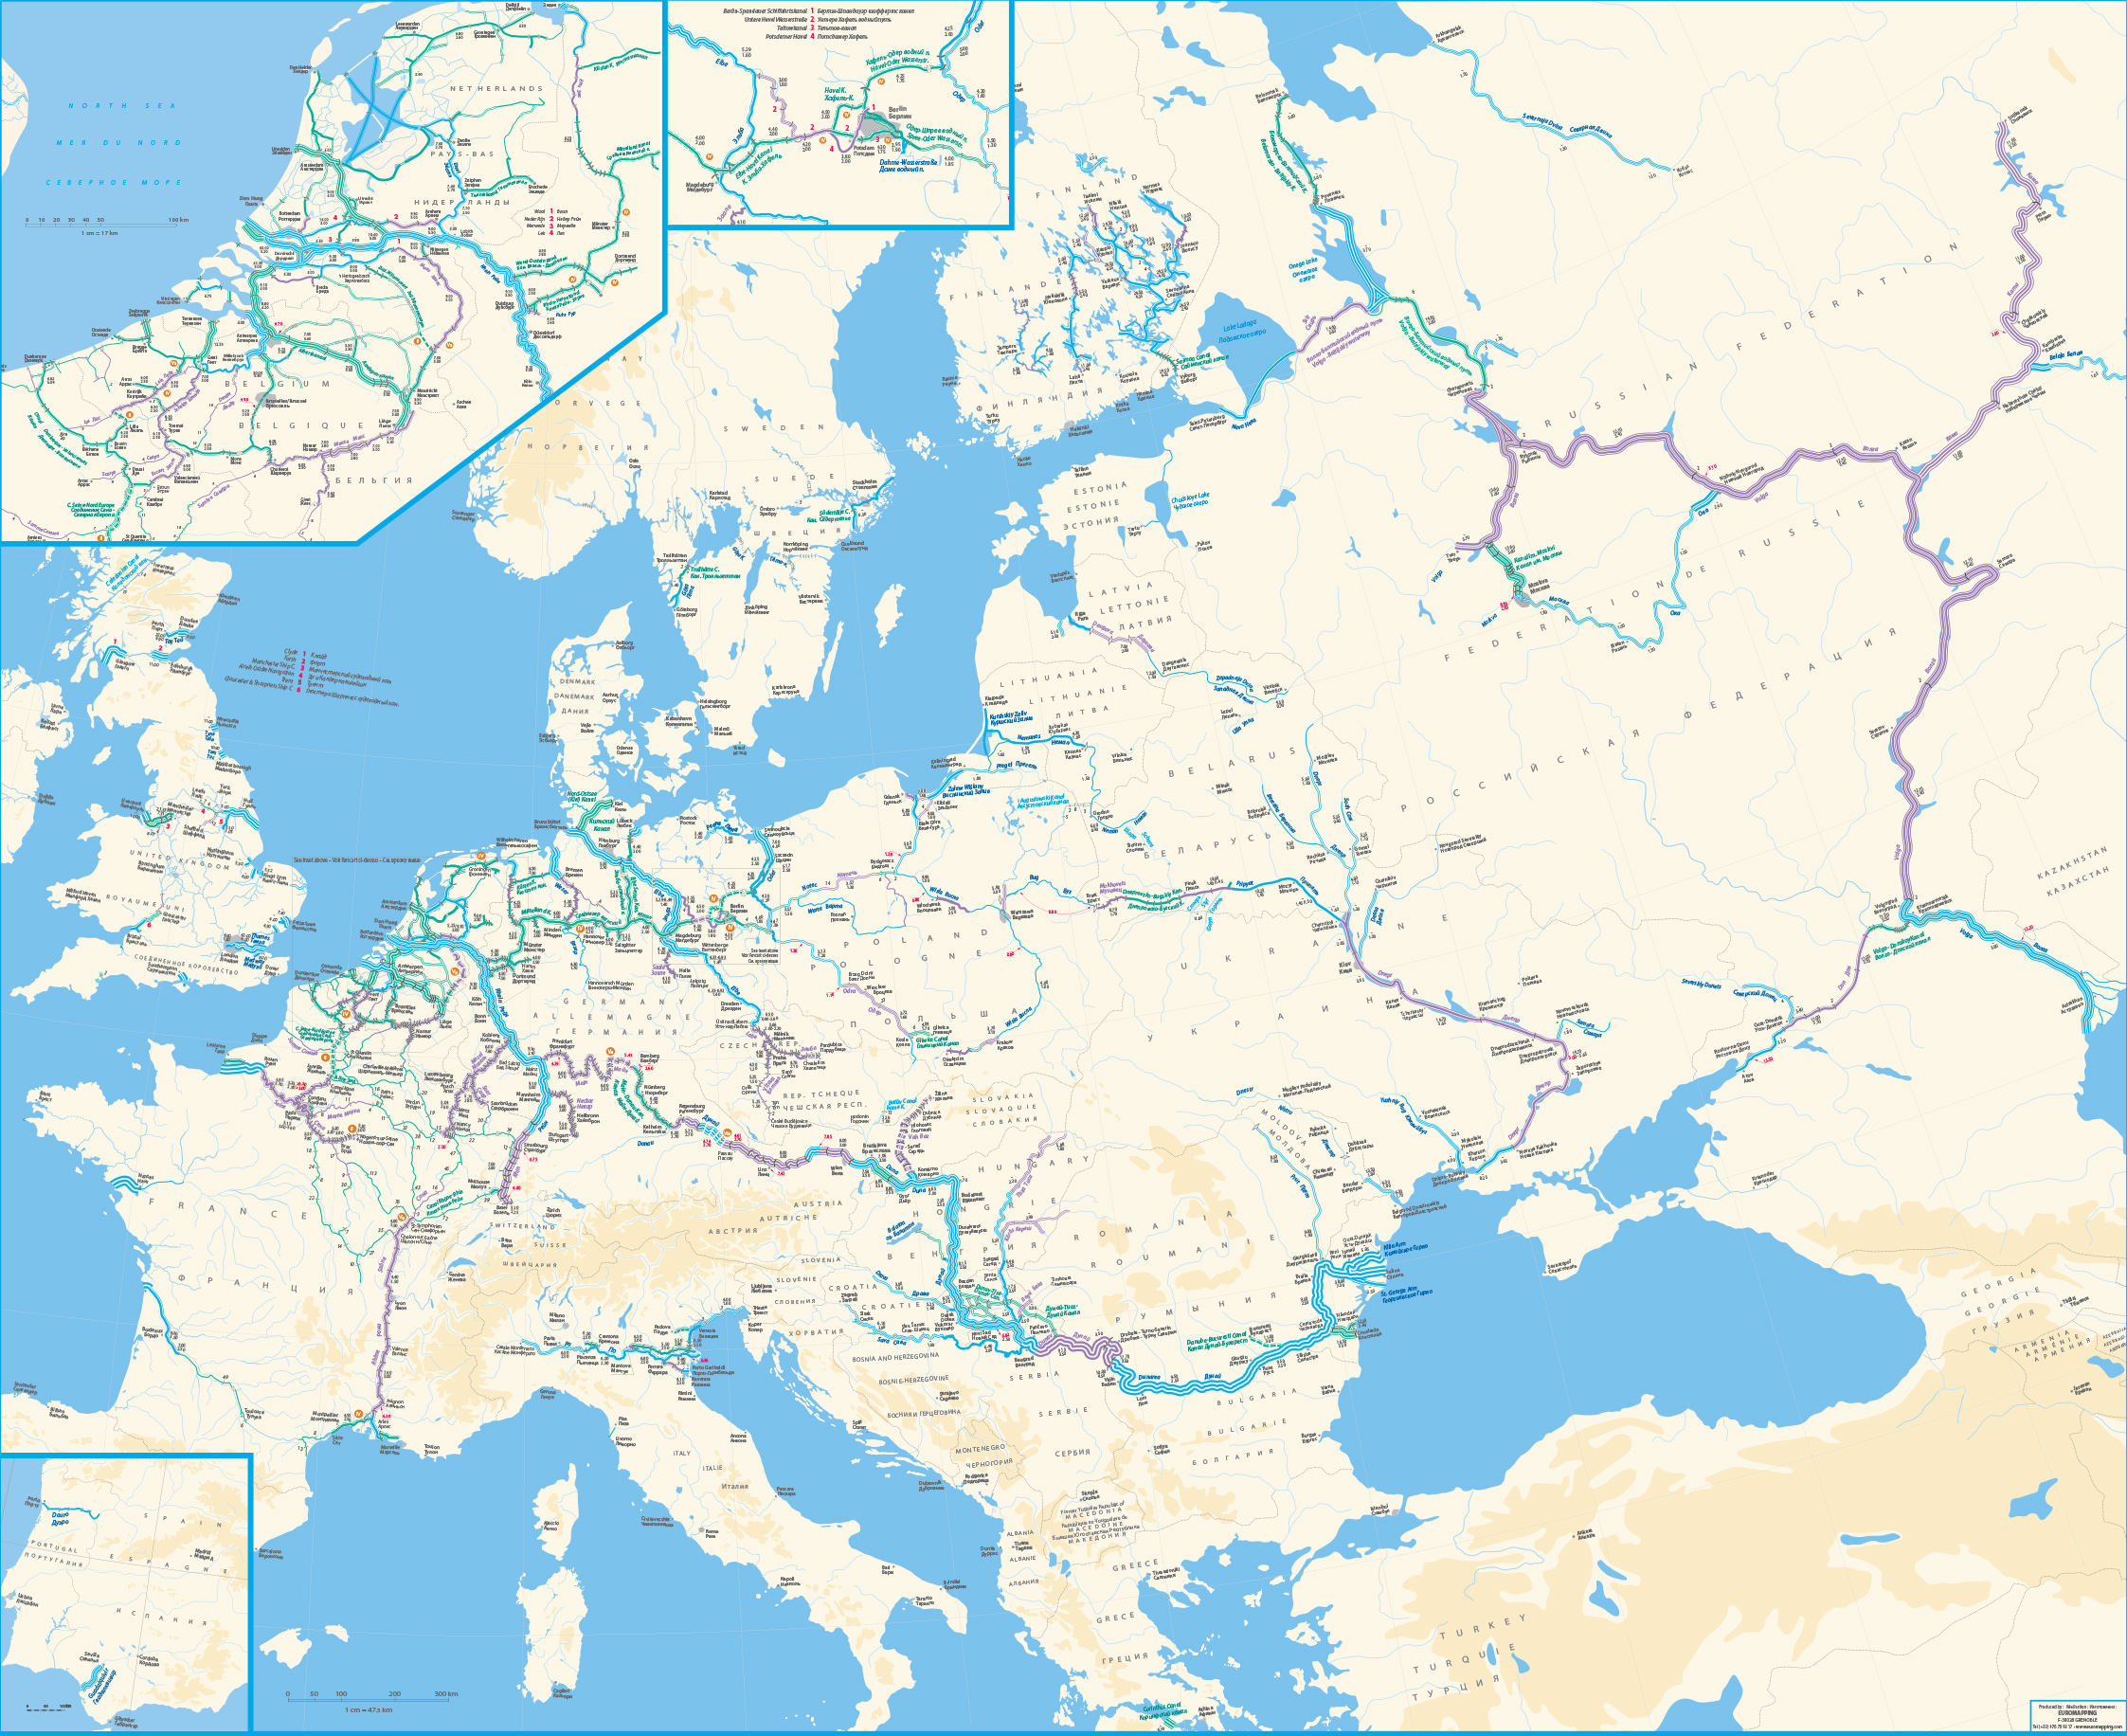 Реки европы. Карта речных путей Европы. Карта судоходных рек Европы. Карта водных путей Восточной Европы. Судоходные реки зарубежной Европы на карте.